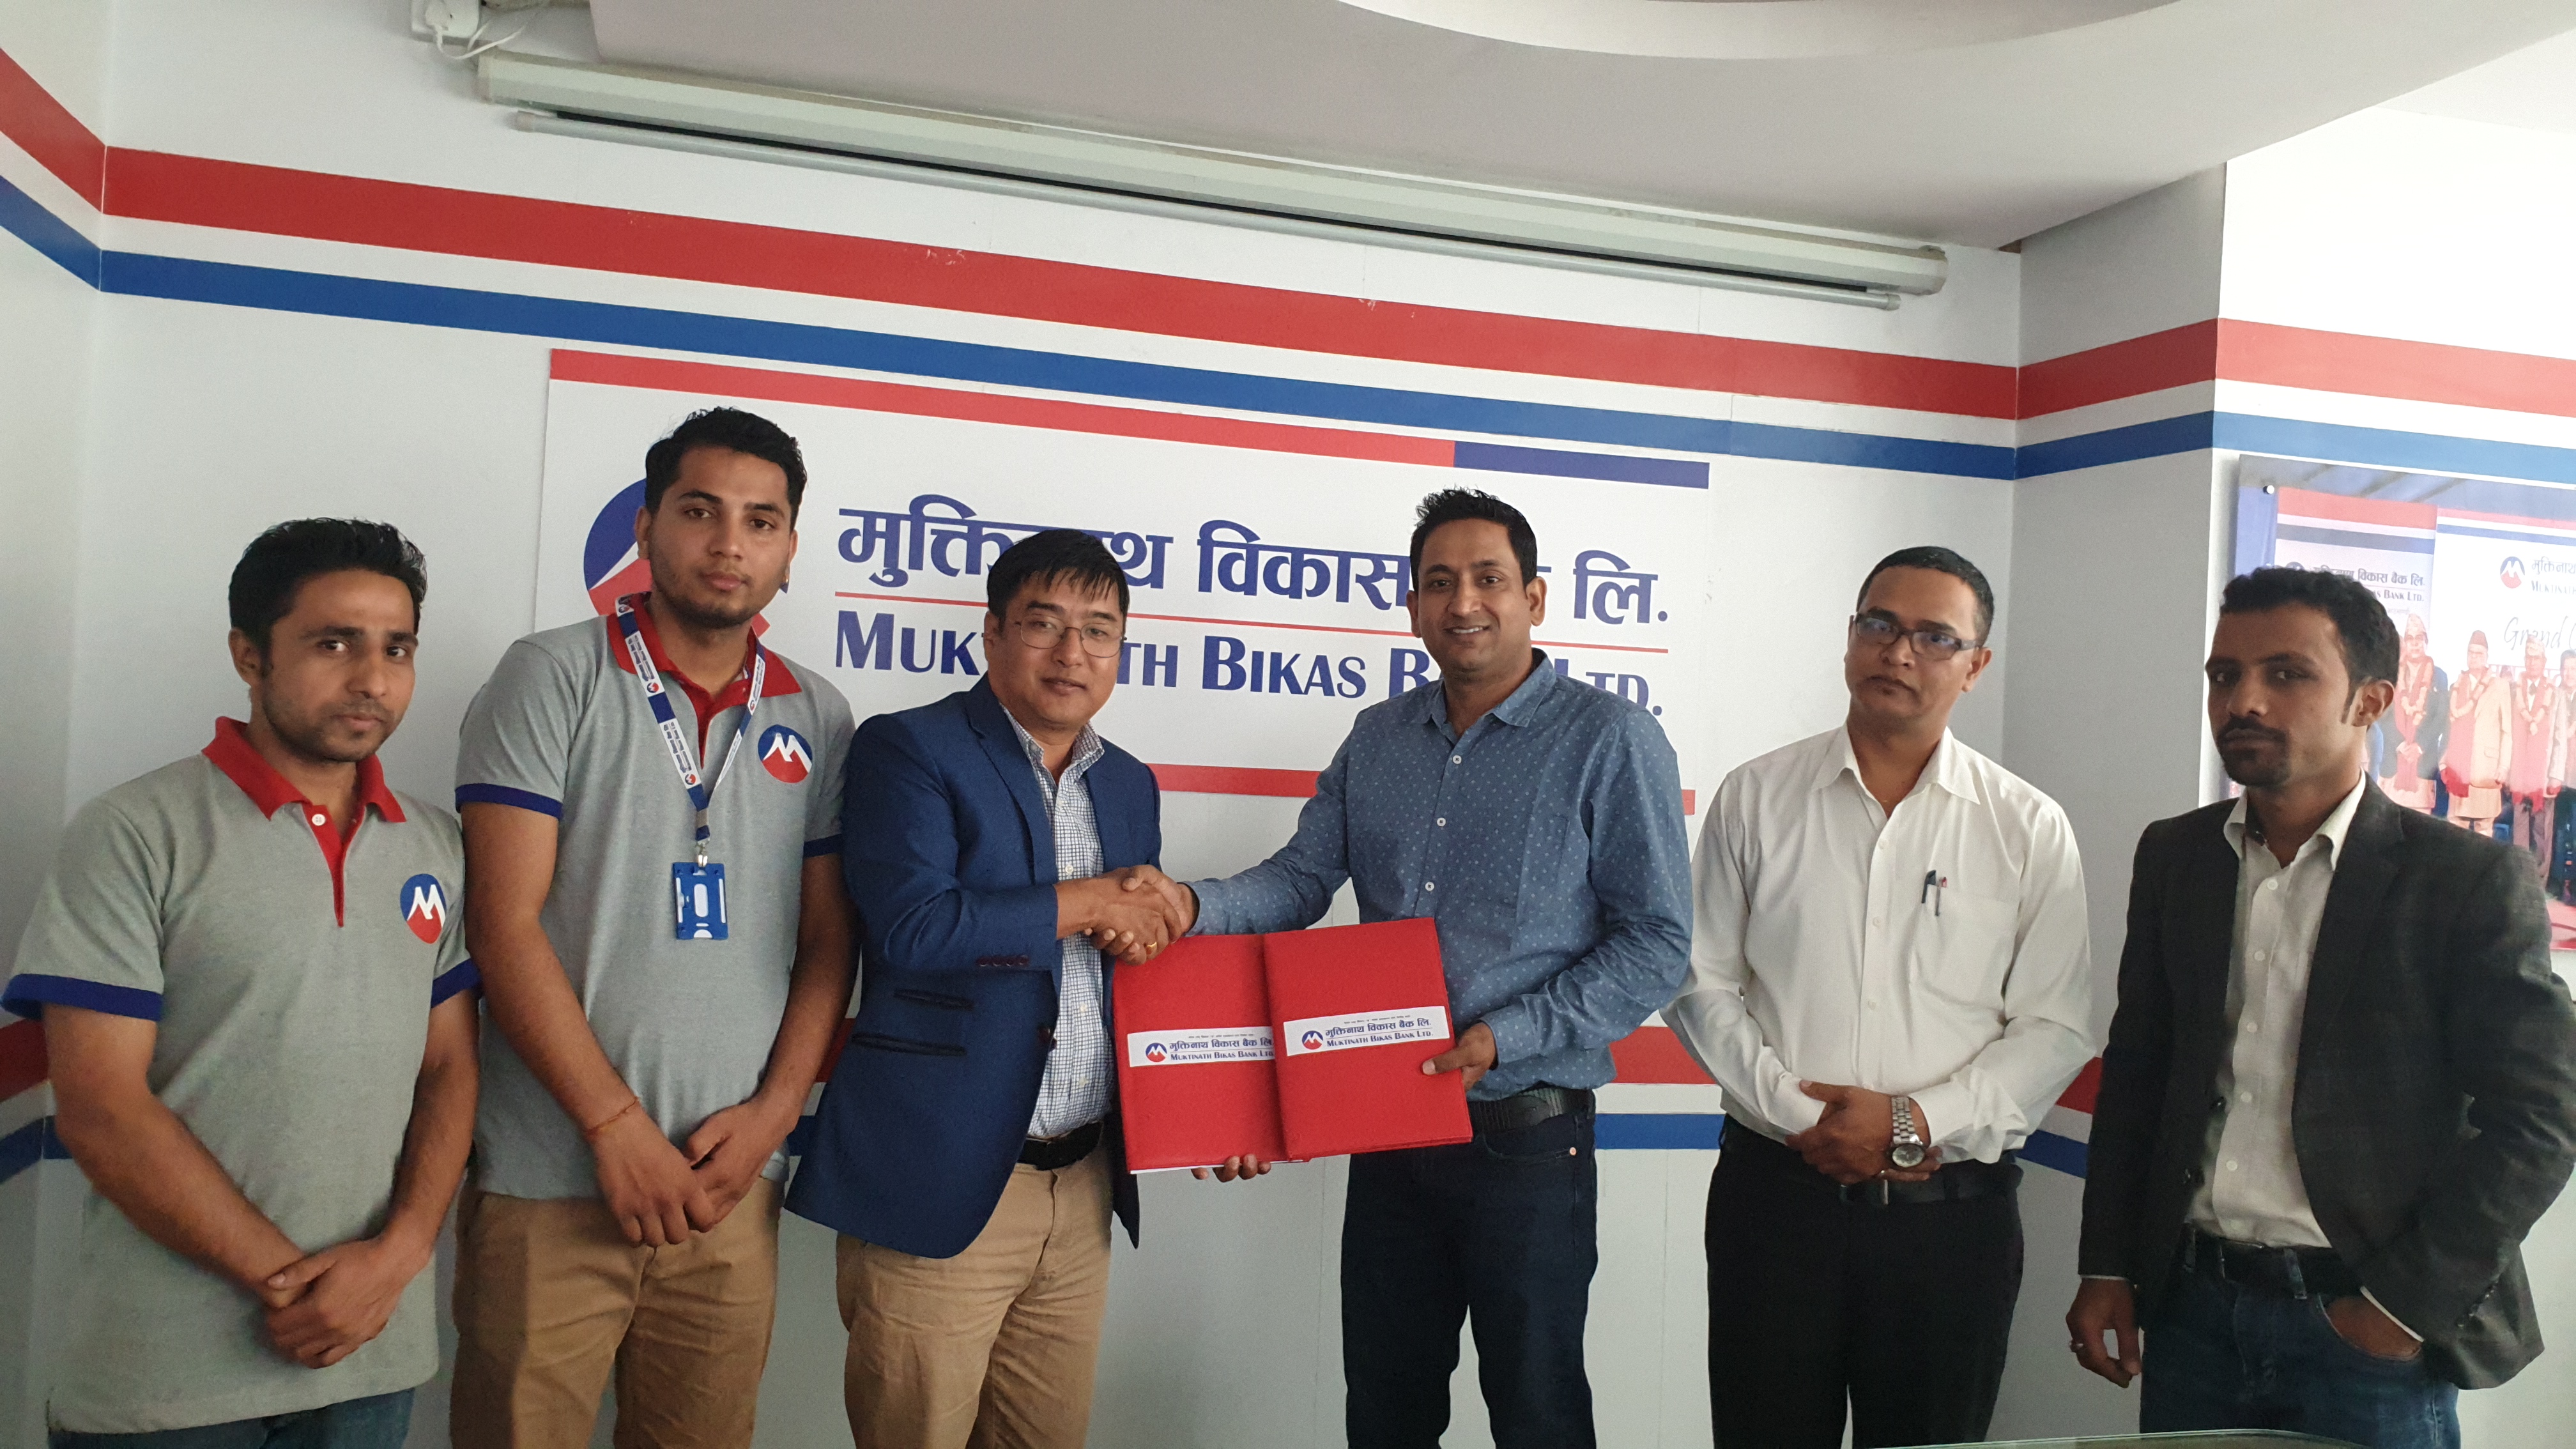 मुक्तिनाथ विकास बैंक र नेपाल रेमिटबीच सहकार्य